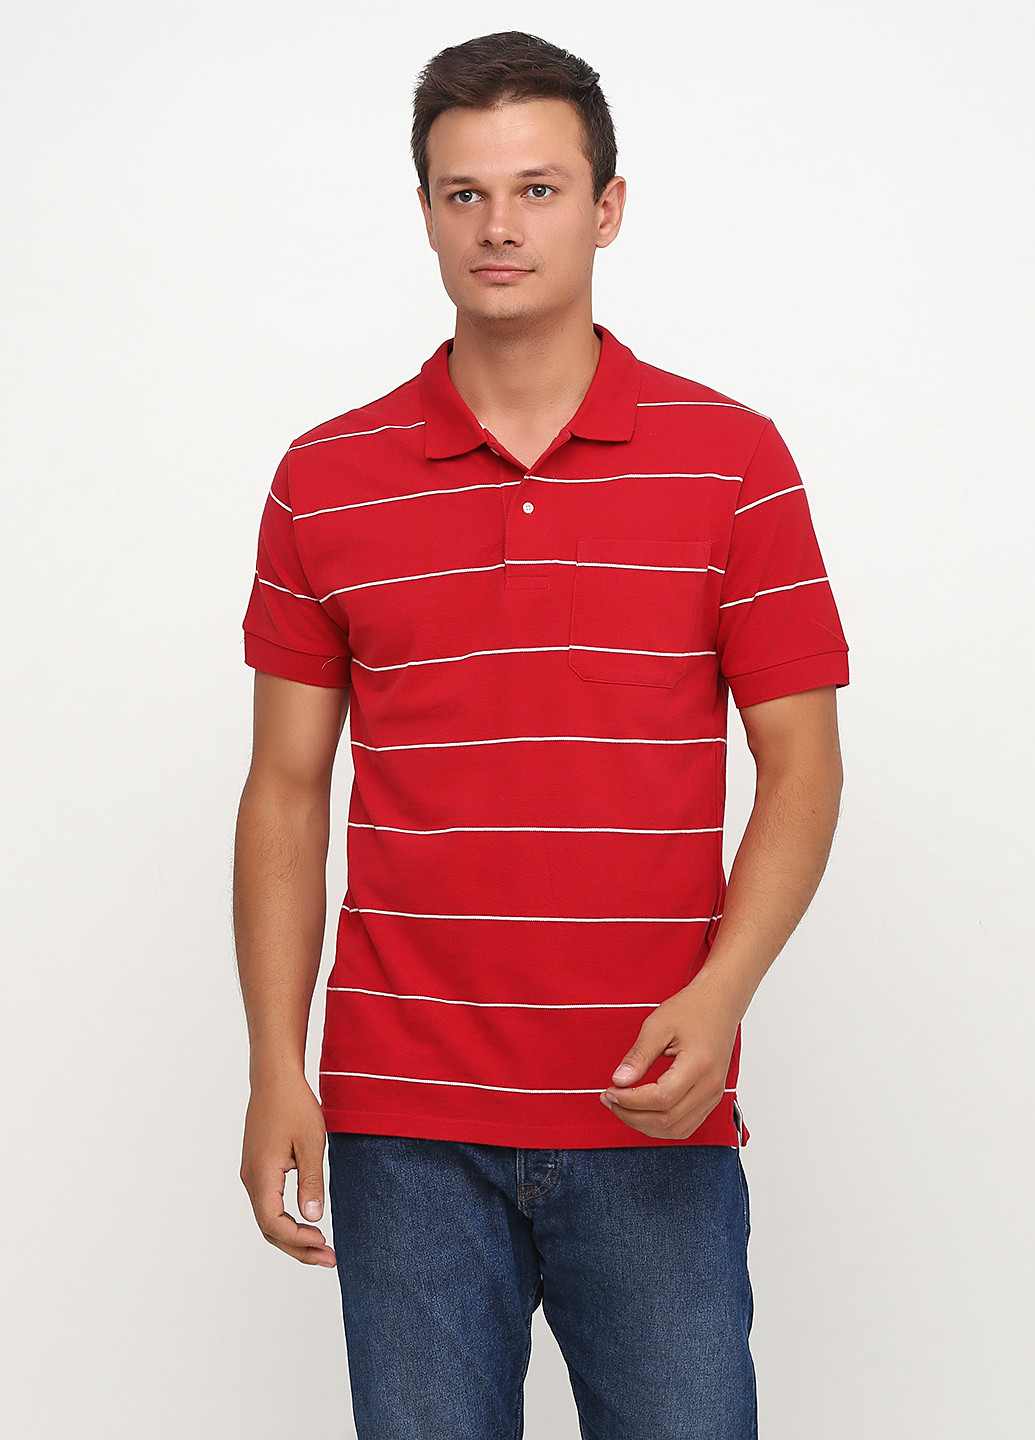 Красная футболка-поло для мужчин D.B.C в полоску